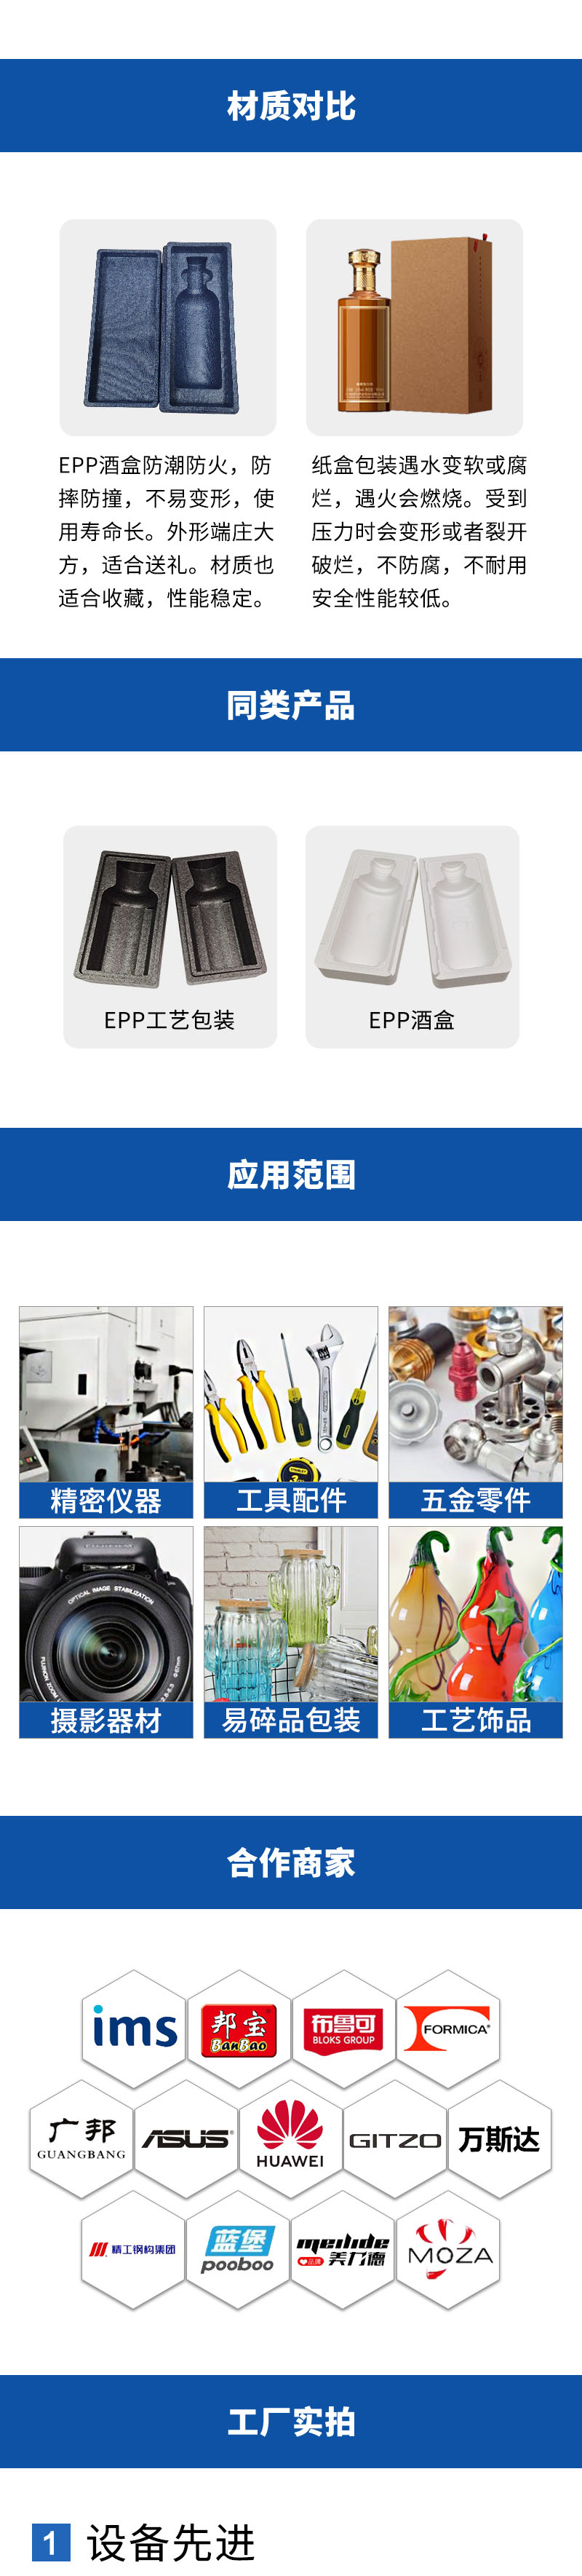 官网EPP精美酒盒包装_09.jpg